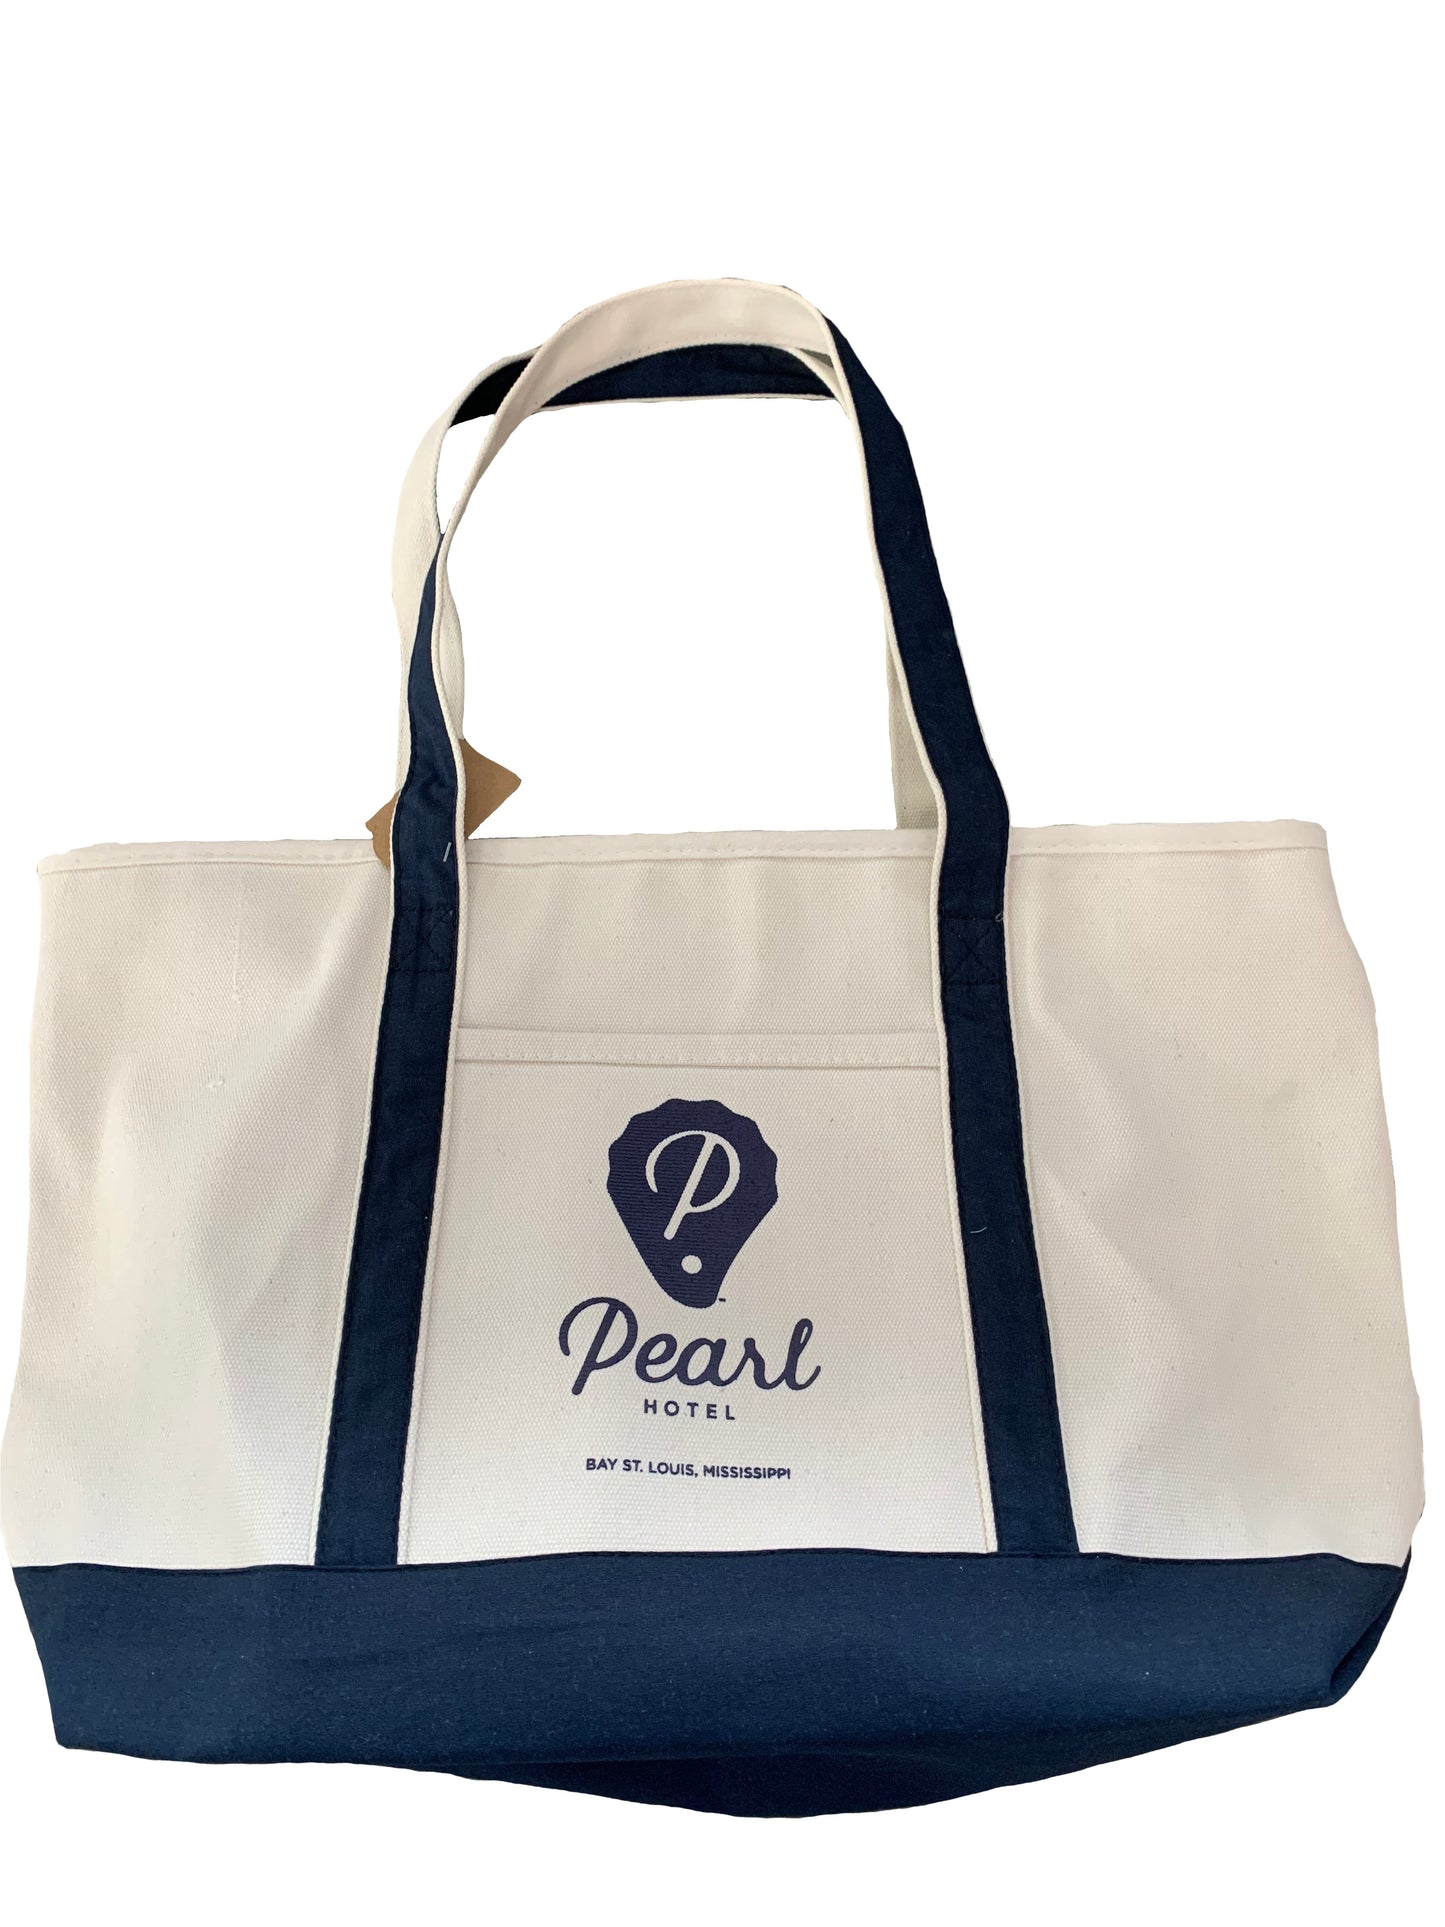 Pearl Hotel Tote Bag